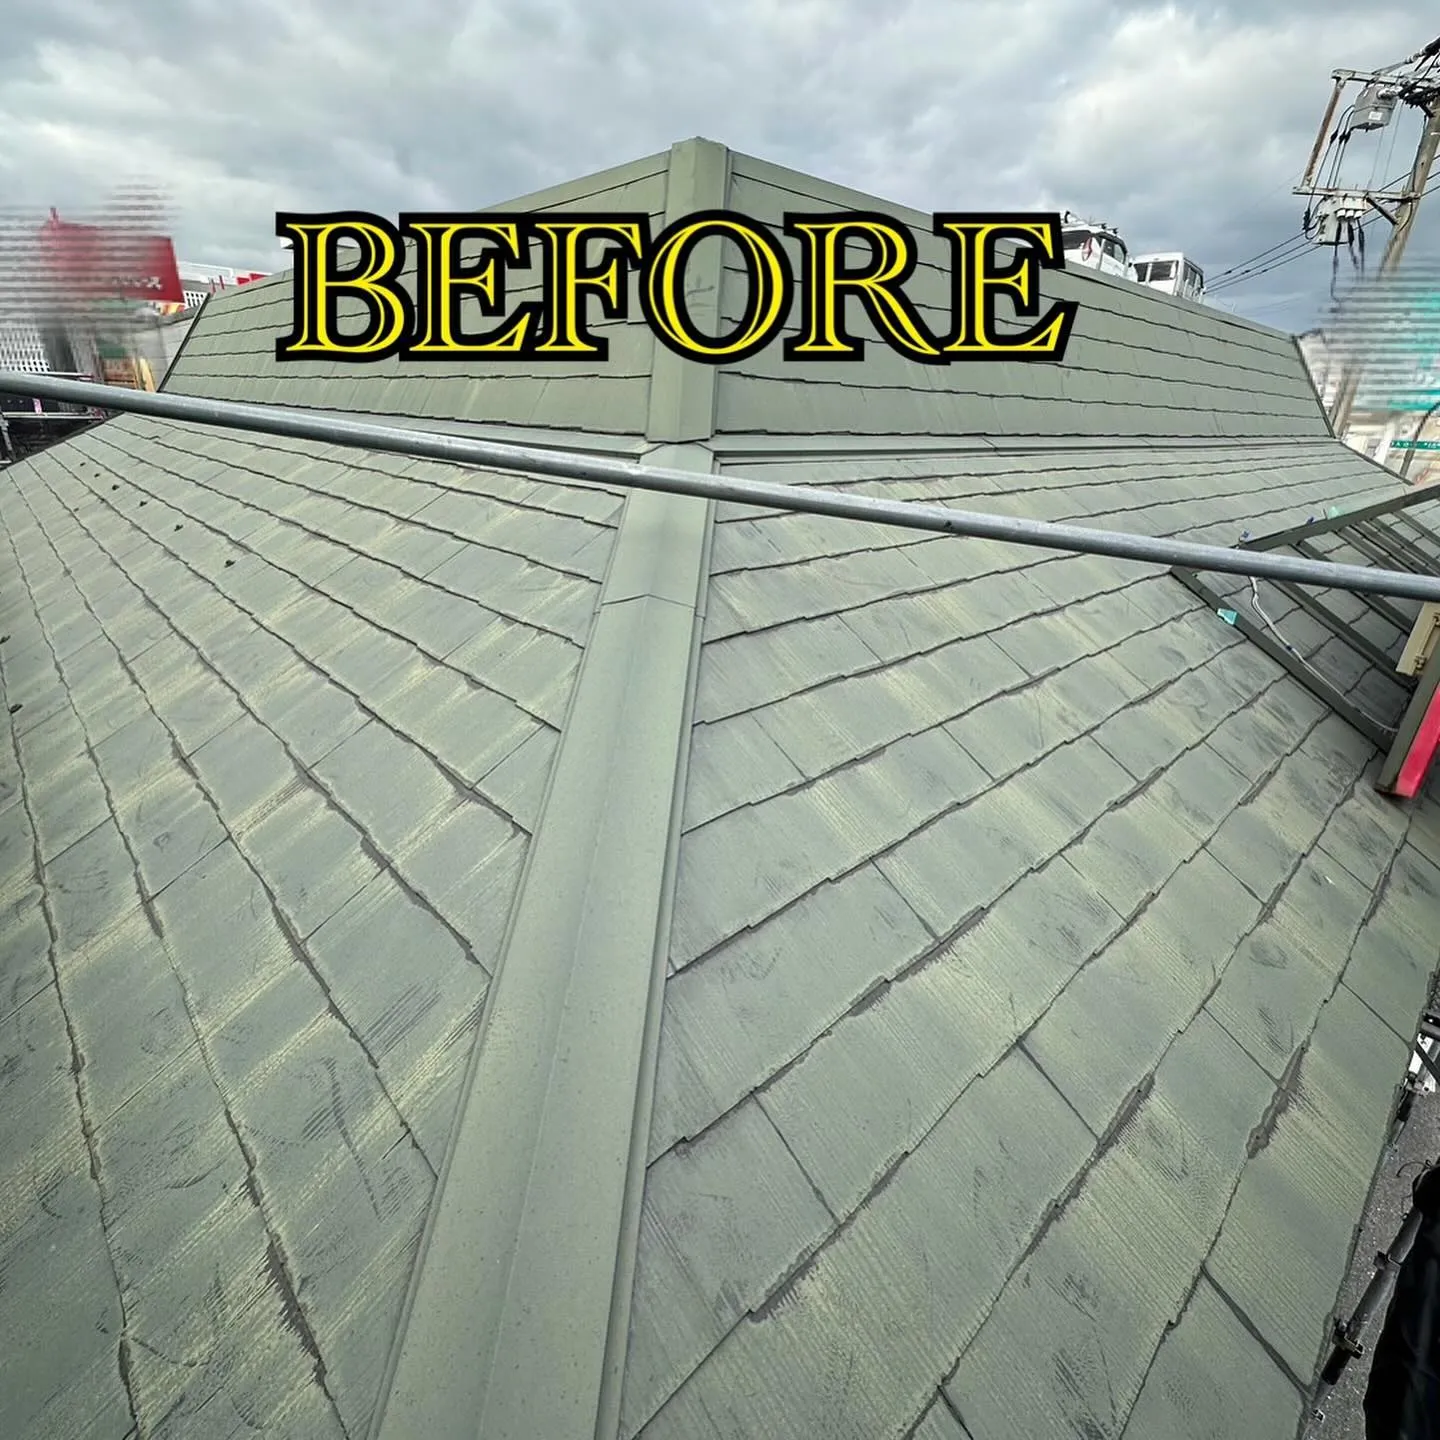 某ファーストフード店舗福岡空港付近の屋根外壁塗装工事のビフォ...